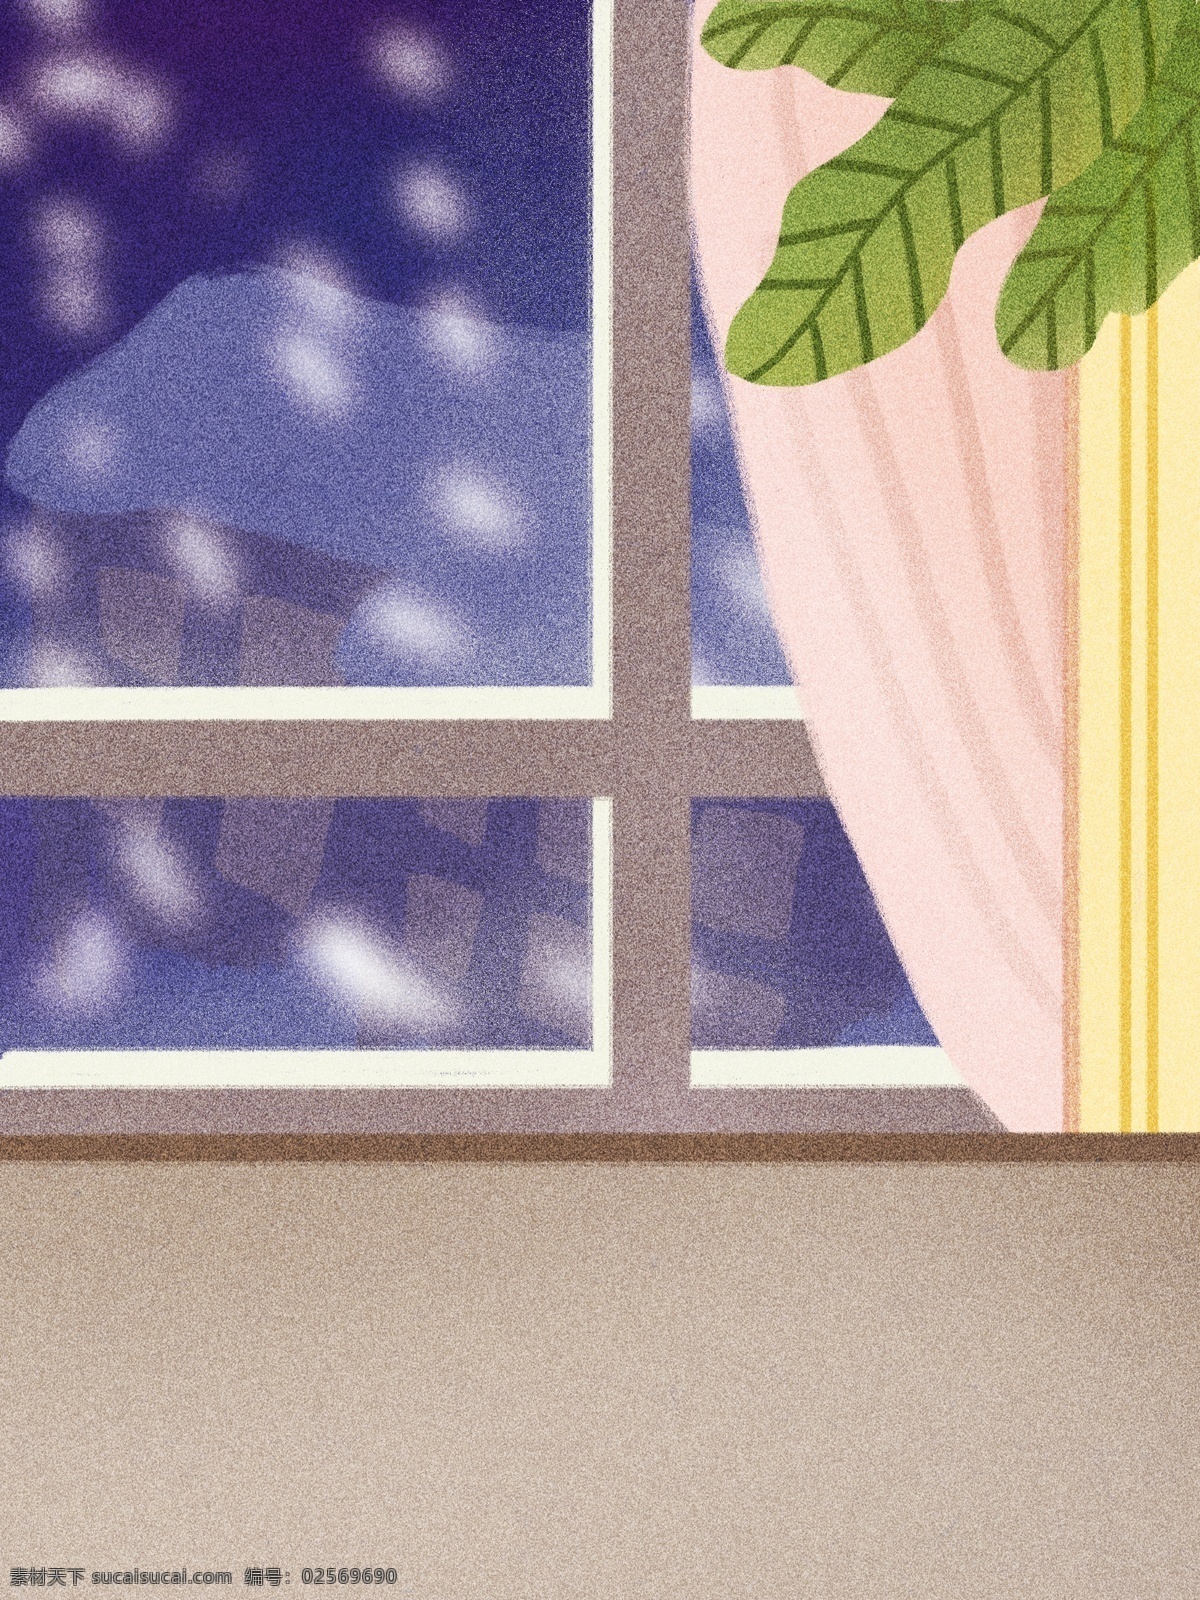 冬季 窗外 下雪 背景 绿叶 窗户 广告背景 背景设计 背景展板 特邀背景 背景展板图 背景图